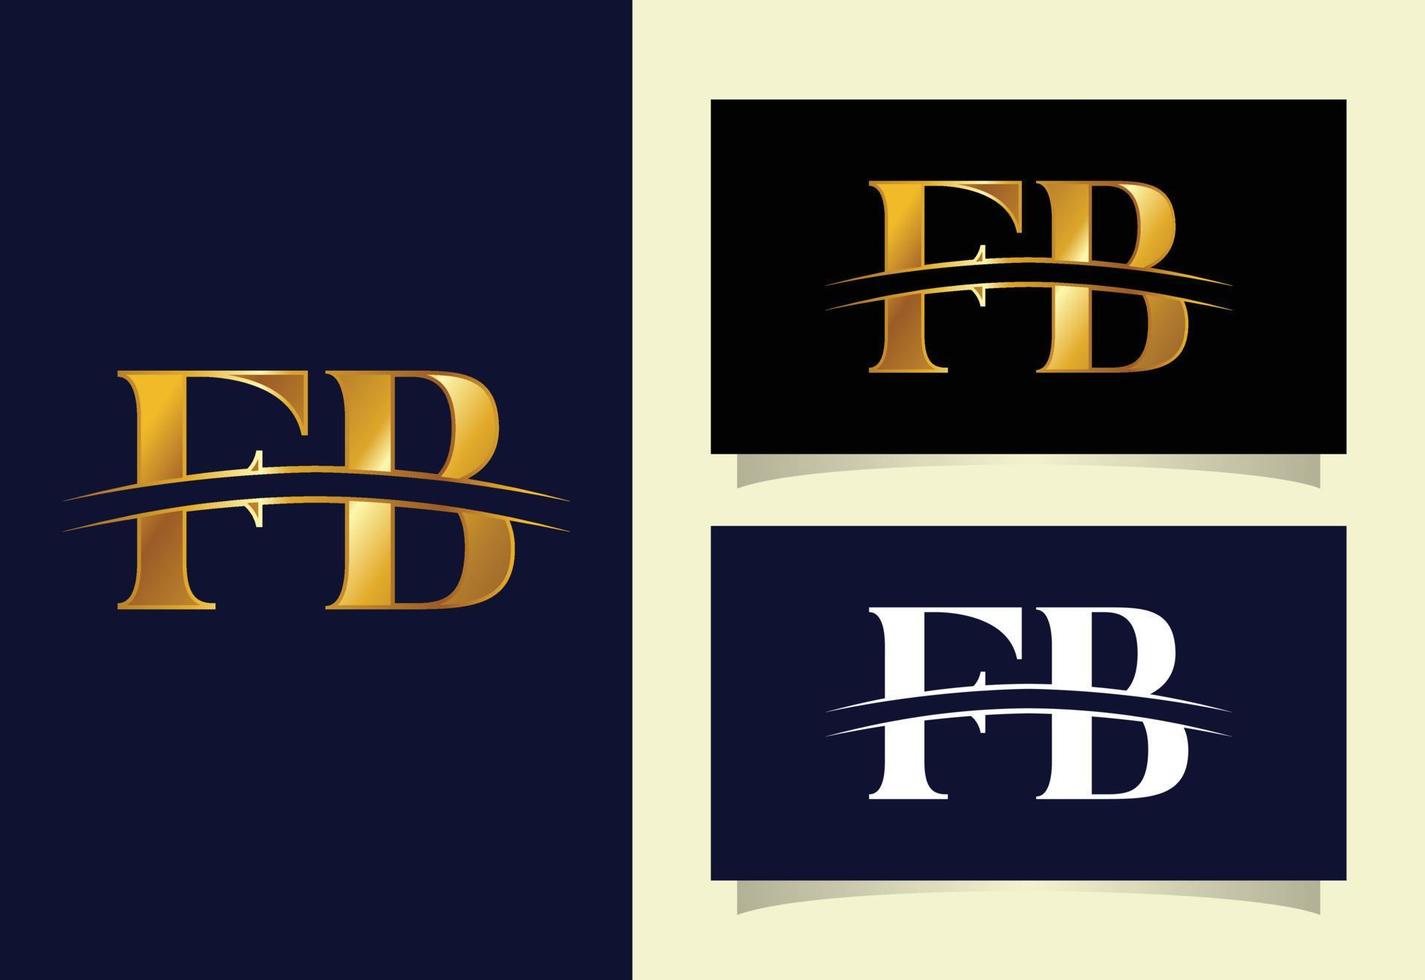 logotipo de icono de letra del alfabeto fb. símbolo del alfabeto gráfico para la identidad empresarial corporativa vector